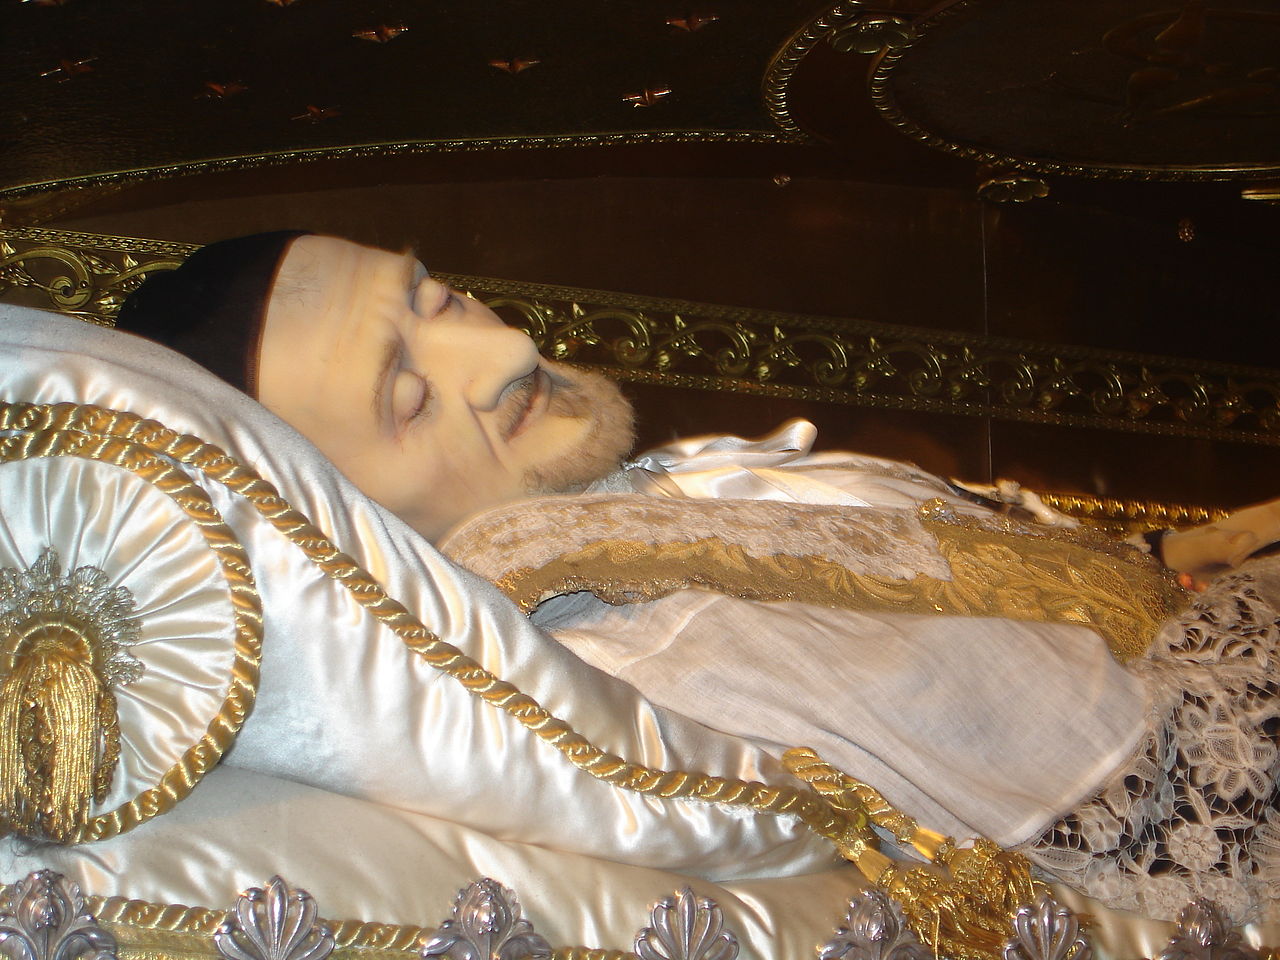 Embalmed body of St. Vincent de Paul